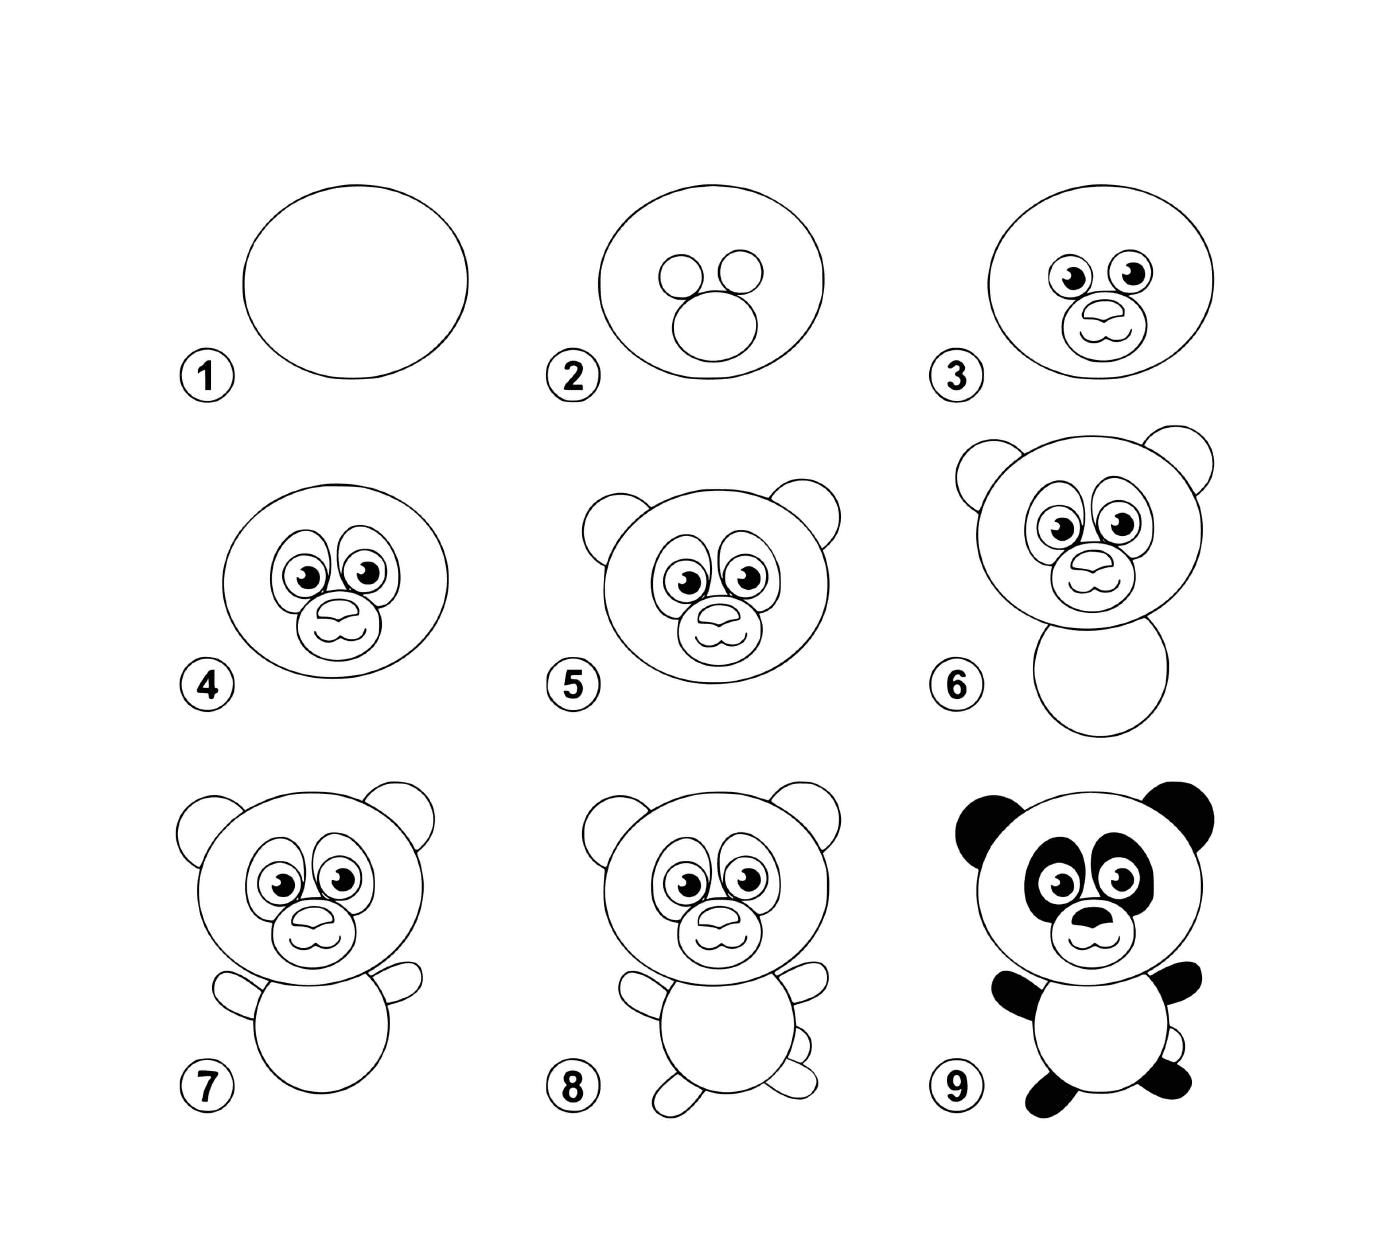  Como desenhar um panda passo a passo 